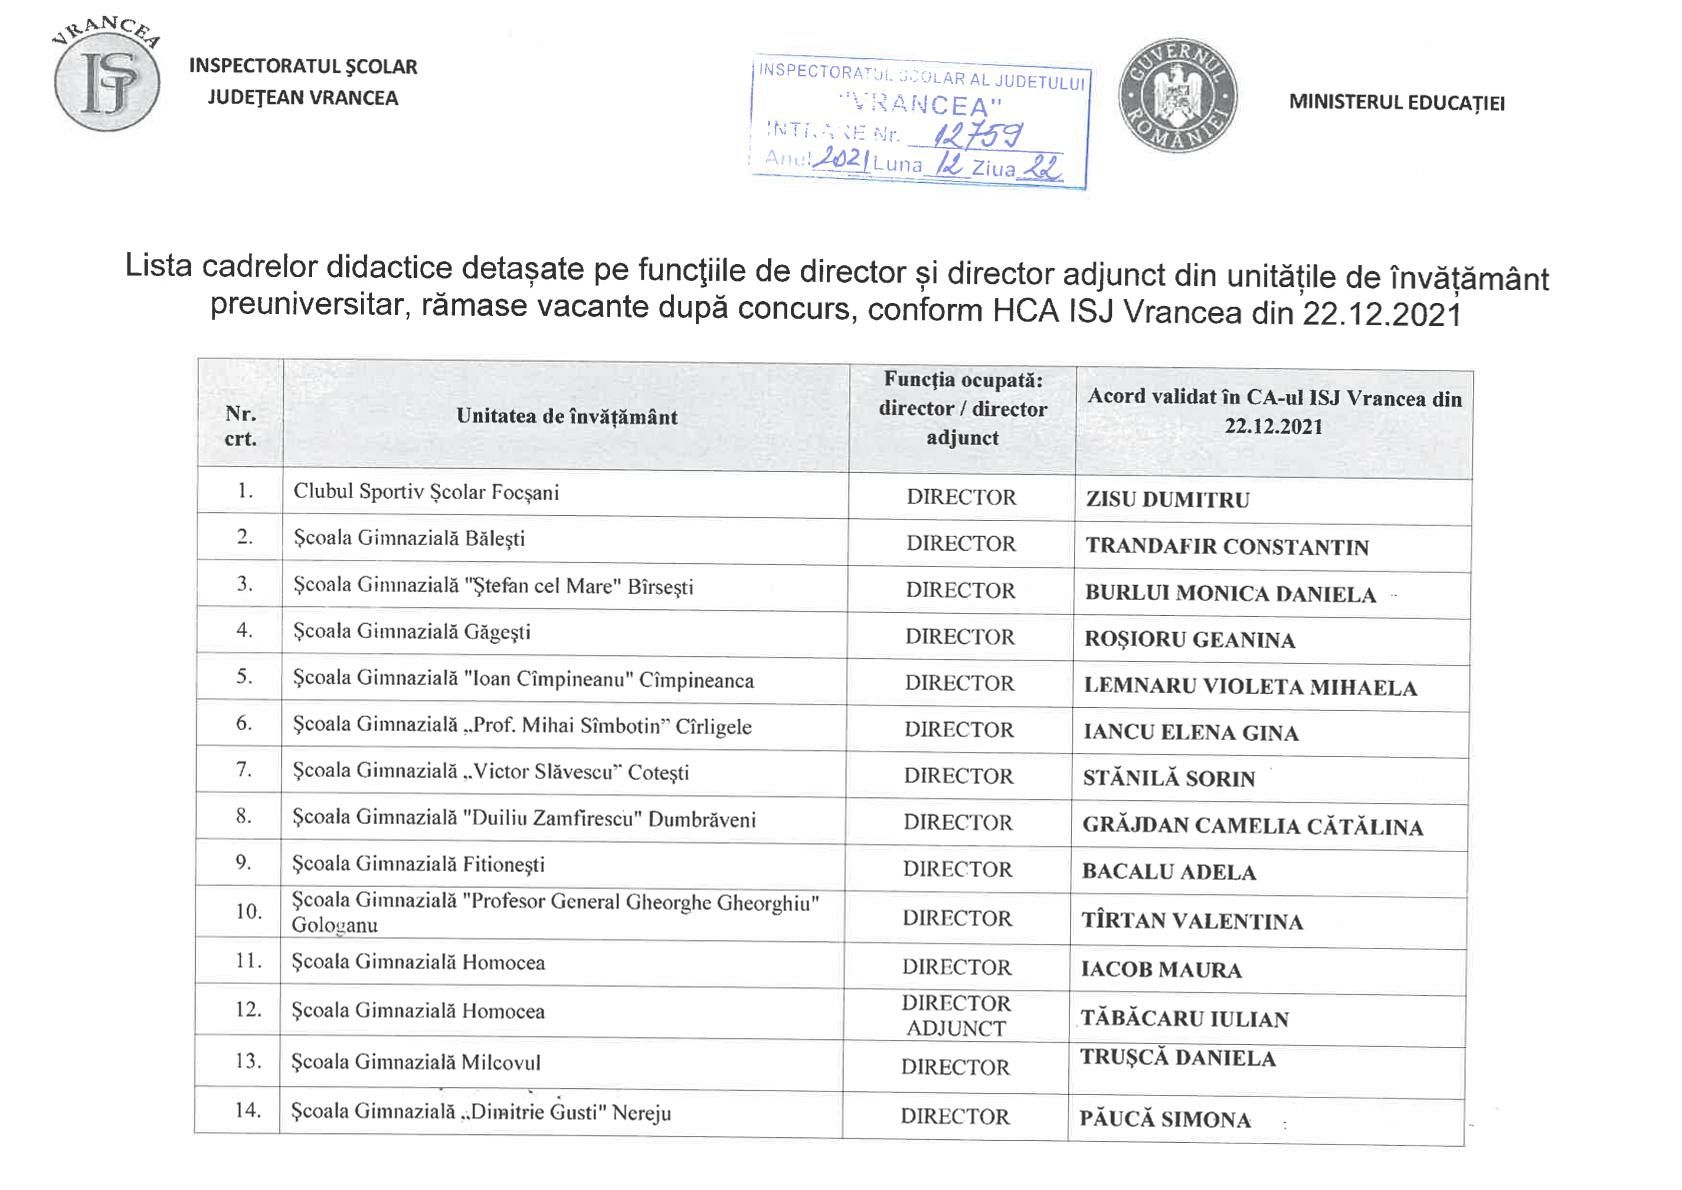 condenser lost heart Sage IȘJ Vrancea a făcut publică lista cadrelor didactice detașate pe funcțiile  vacante de director și director adjunct